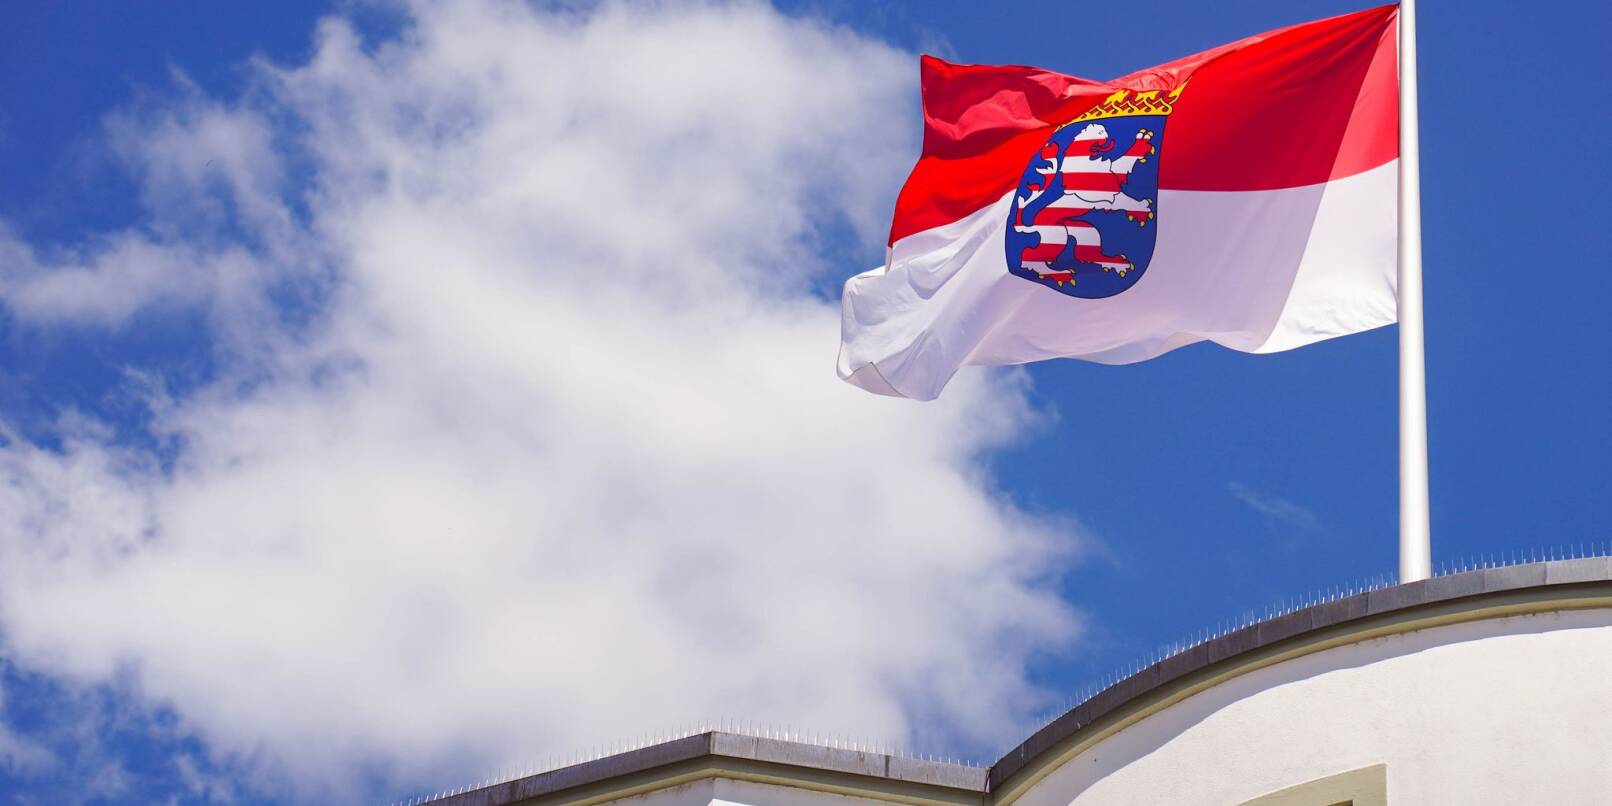 Die hessische Landesfahne weht auf dem Dach des hessischen Landtages vor dem Sommerhimmel.